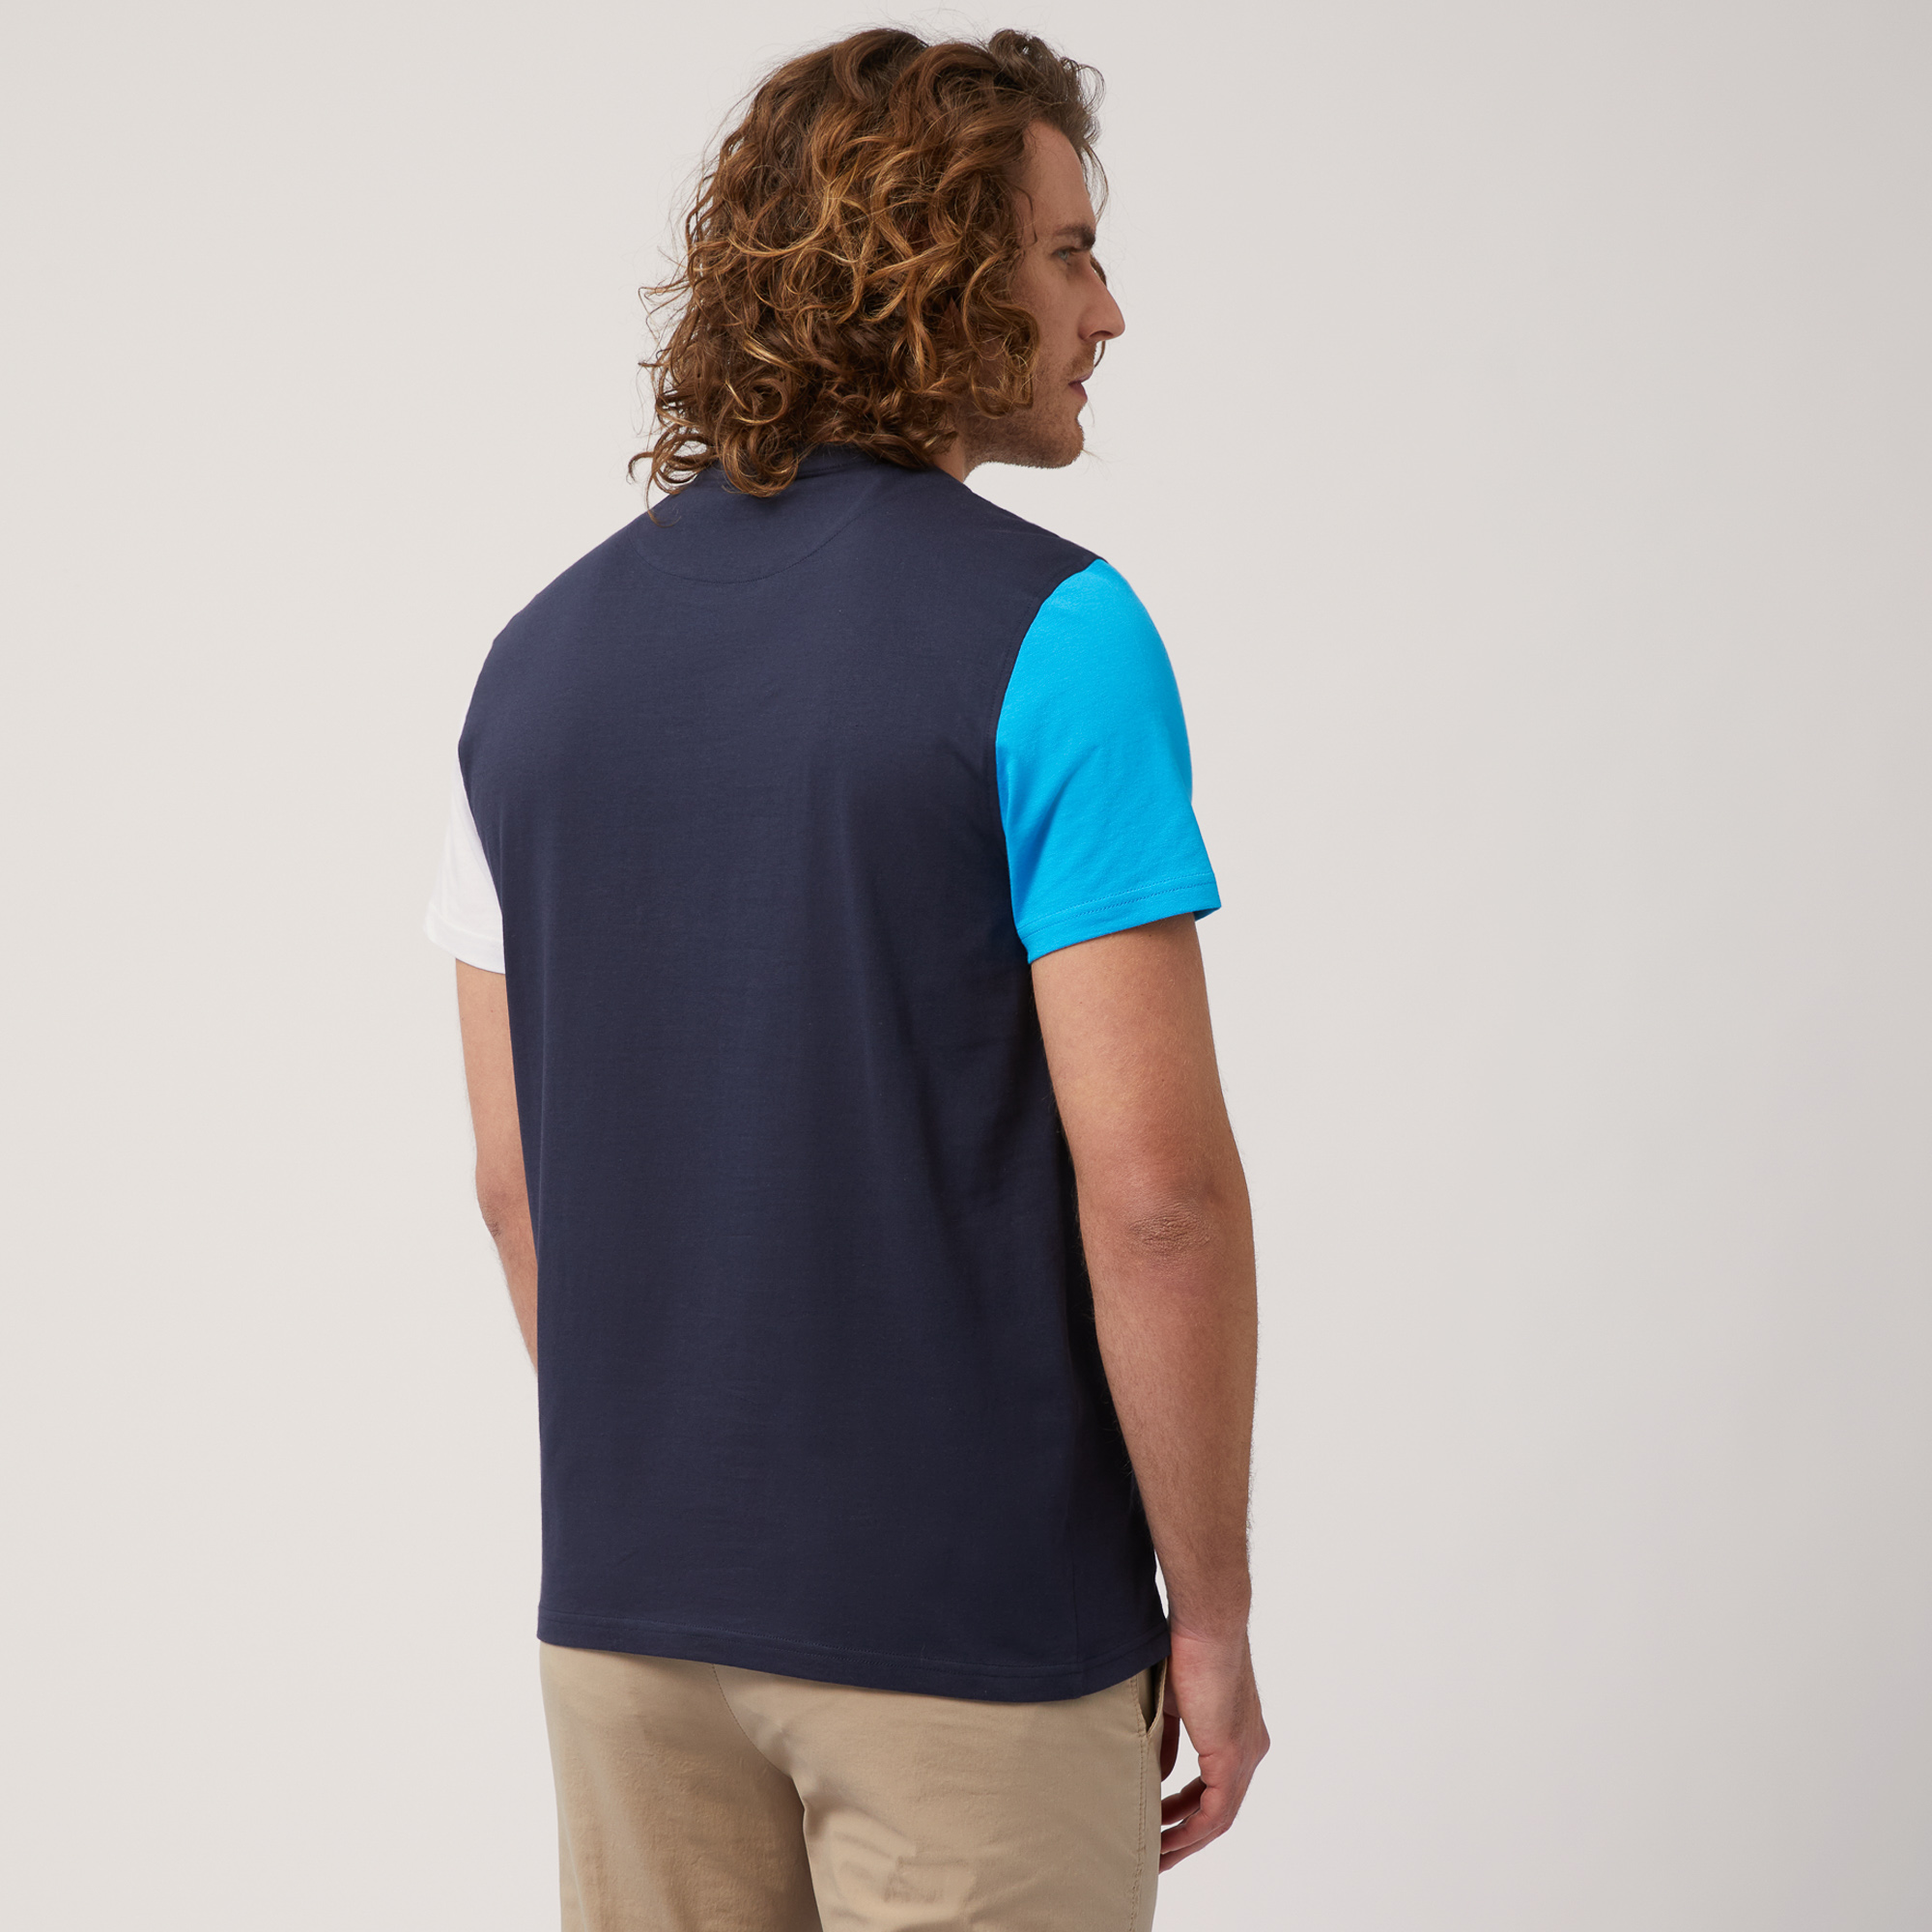 T-Shirt aus Baumwolle mit Colorblocking-Effekt, Blau, large image number 1